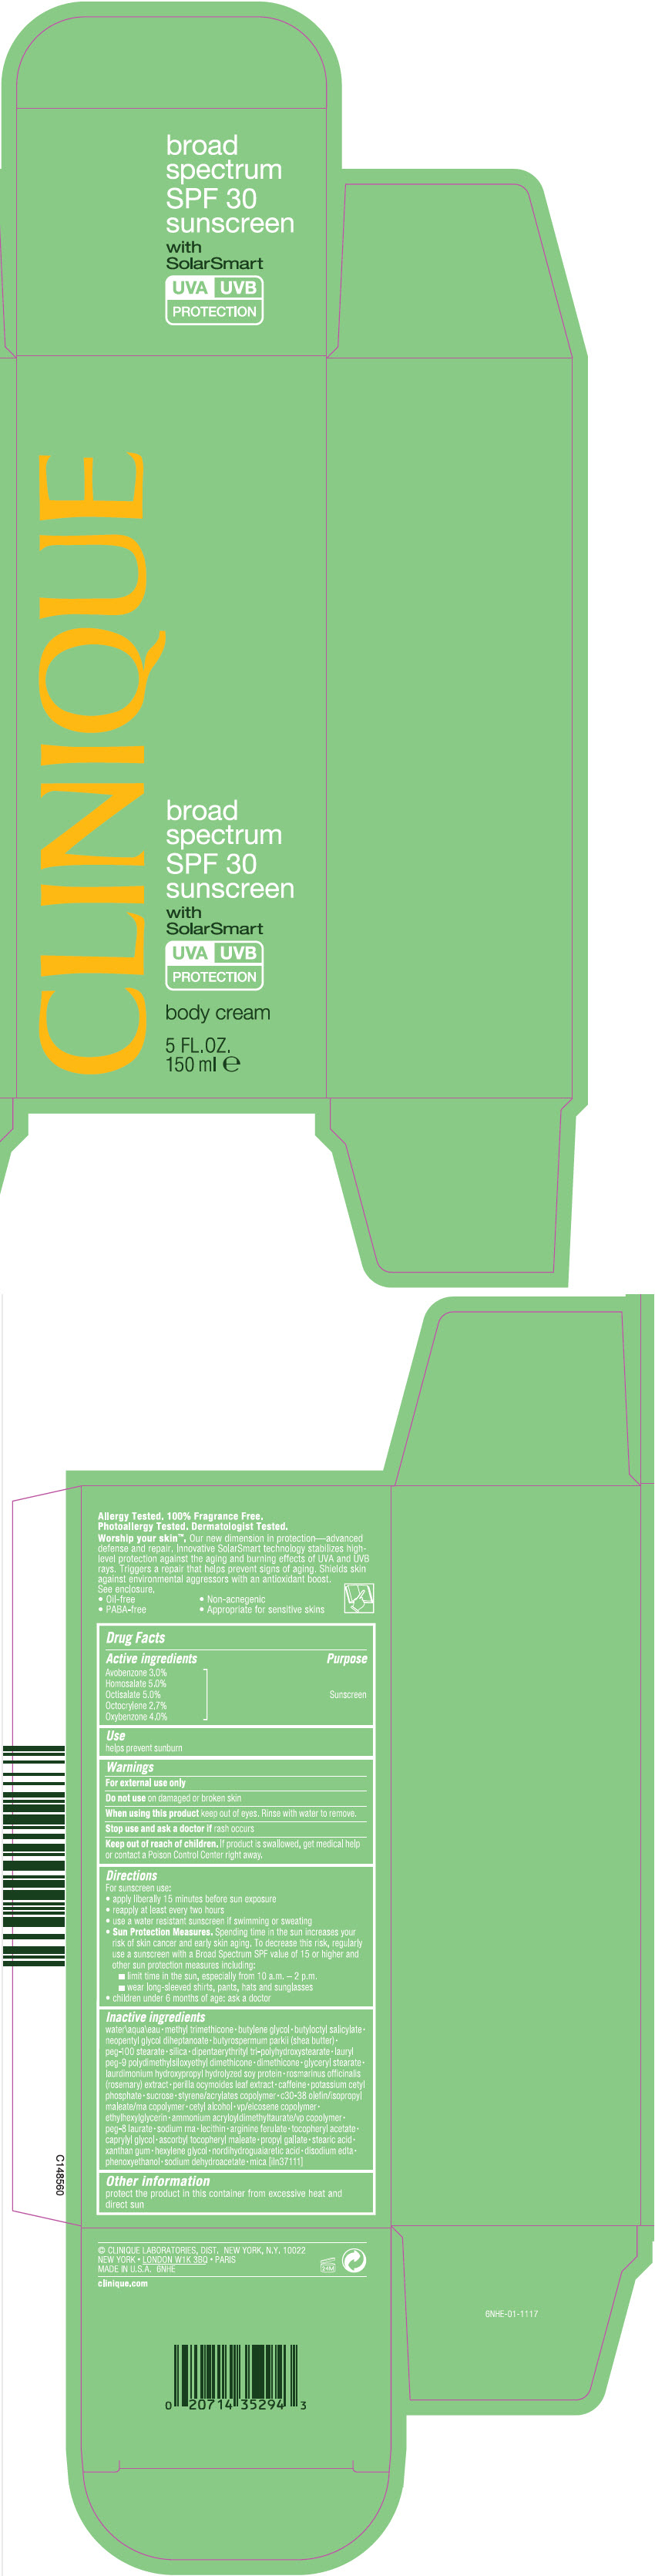 PRINCIPAL DISPLAY PANEL - 150 ml Tube Carton